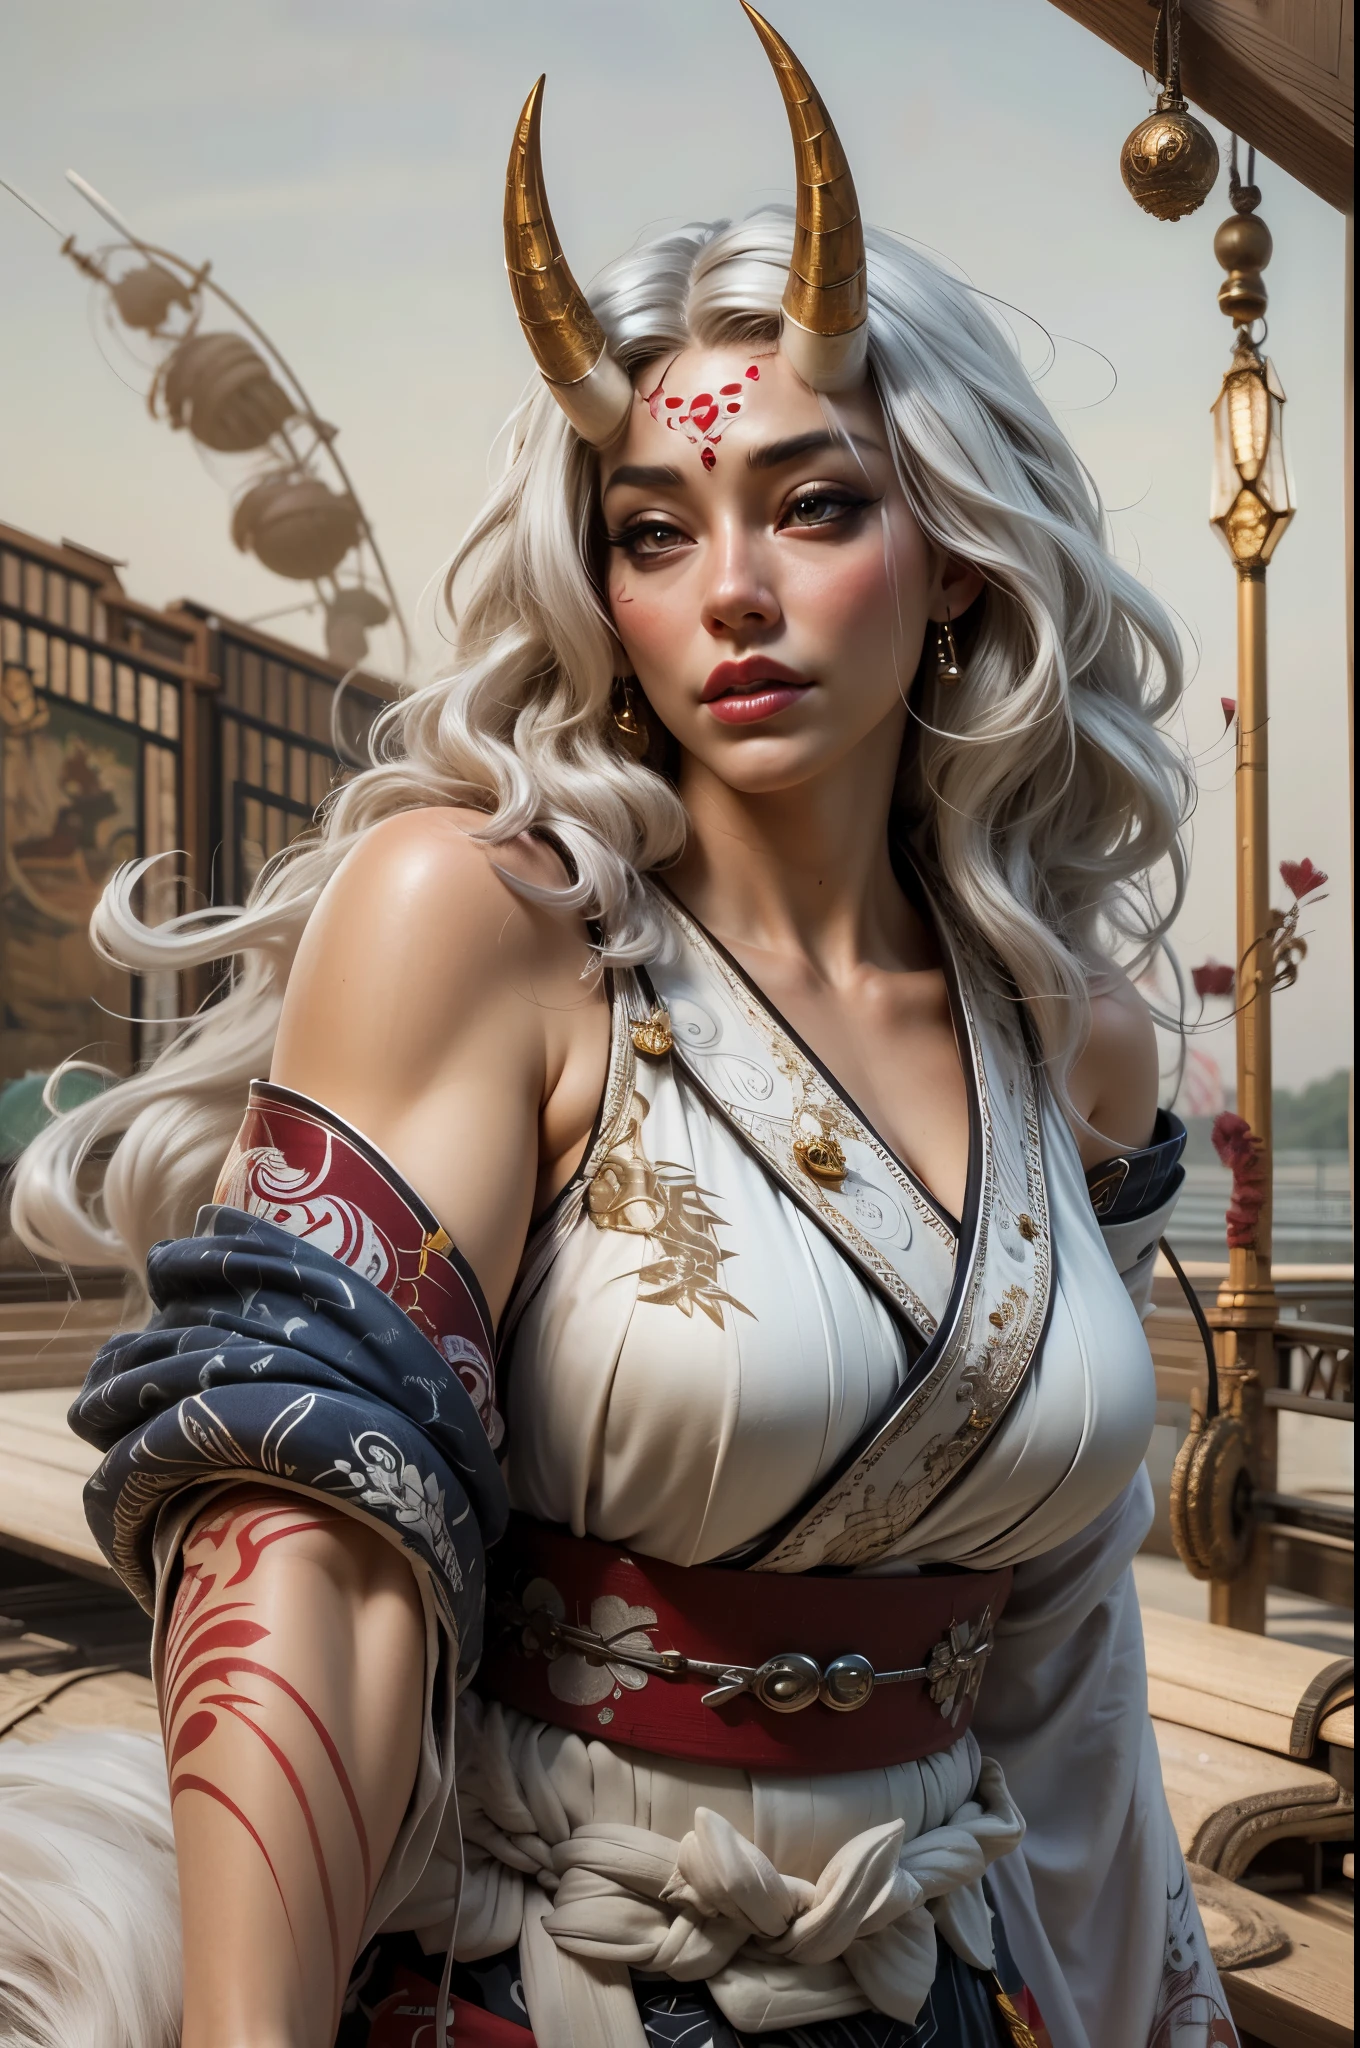 美麗的亞洲鬼女戰士, 穿著短髮落肩和服 , 擁有厚實的曲線成熟的身體但肌肉發達, 又長又密的白髮被風吹起, 2個長鬼角, 皮膚白皙泛紅 , 完美的臉型、富有表情的眼睛 , 厚嘴唇,